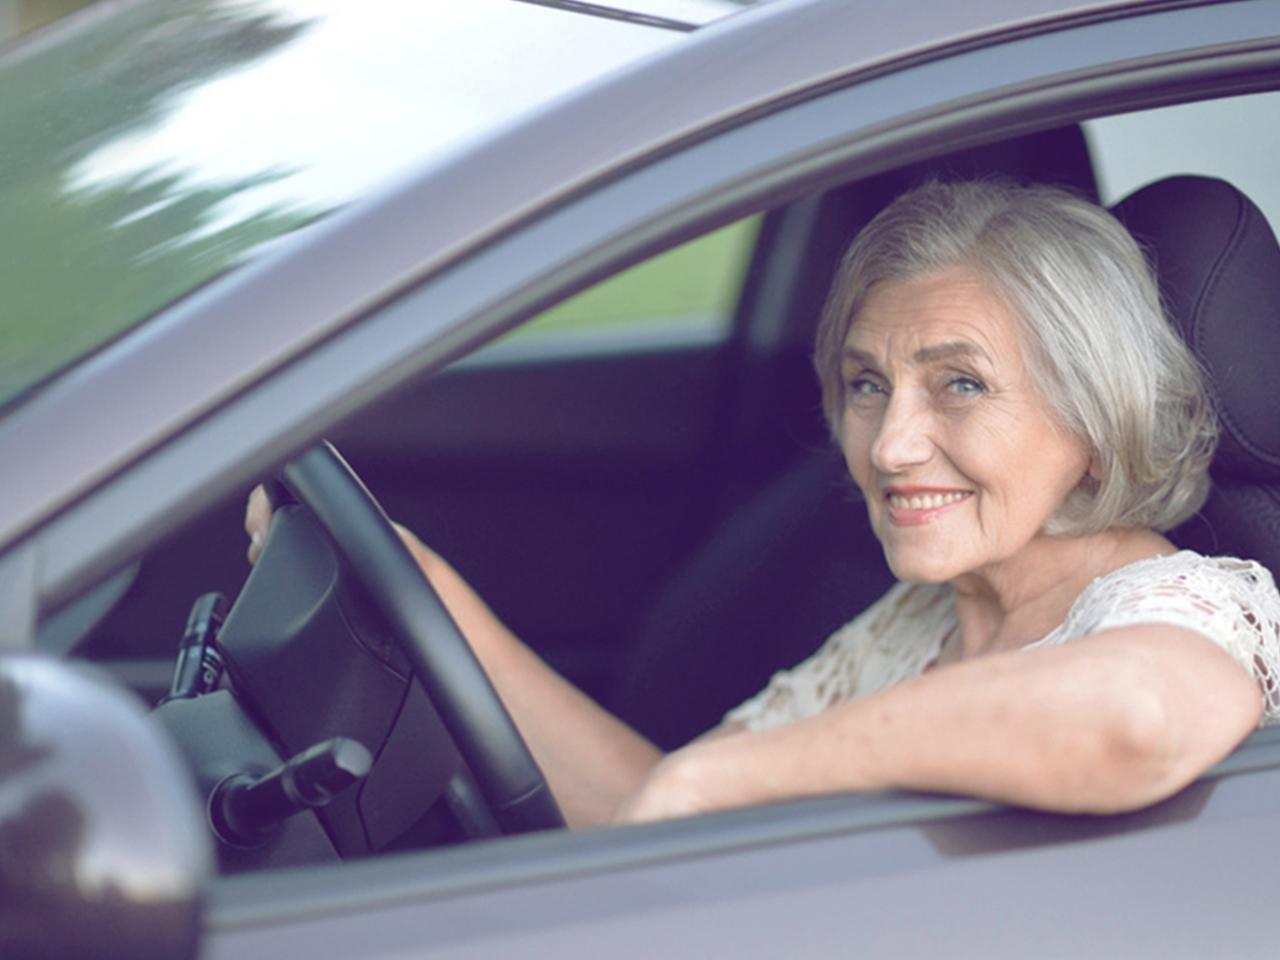 HILDEGARD, 74: braucht ihr Auto um im Alter flexibel und mobil zu bleiben